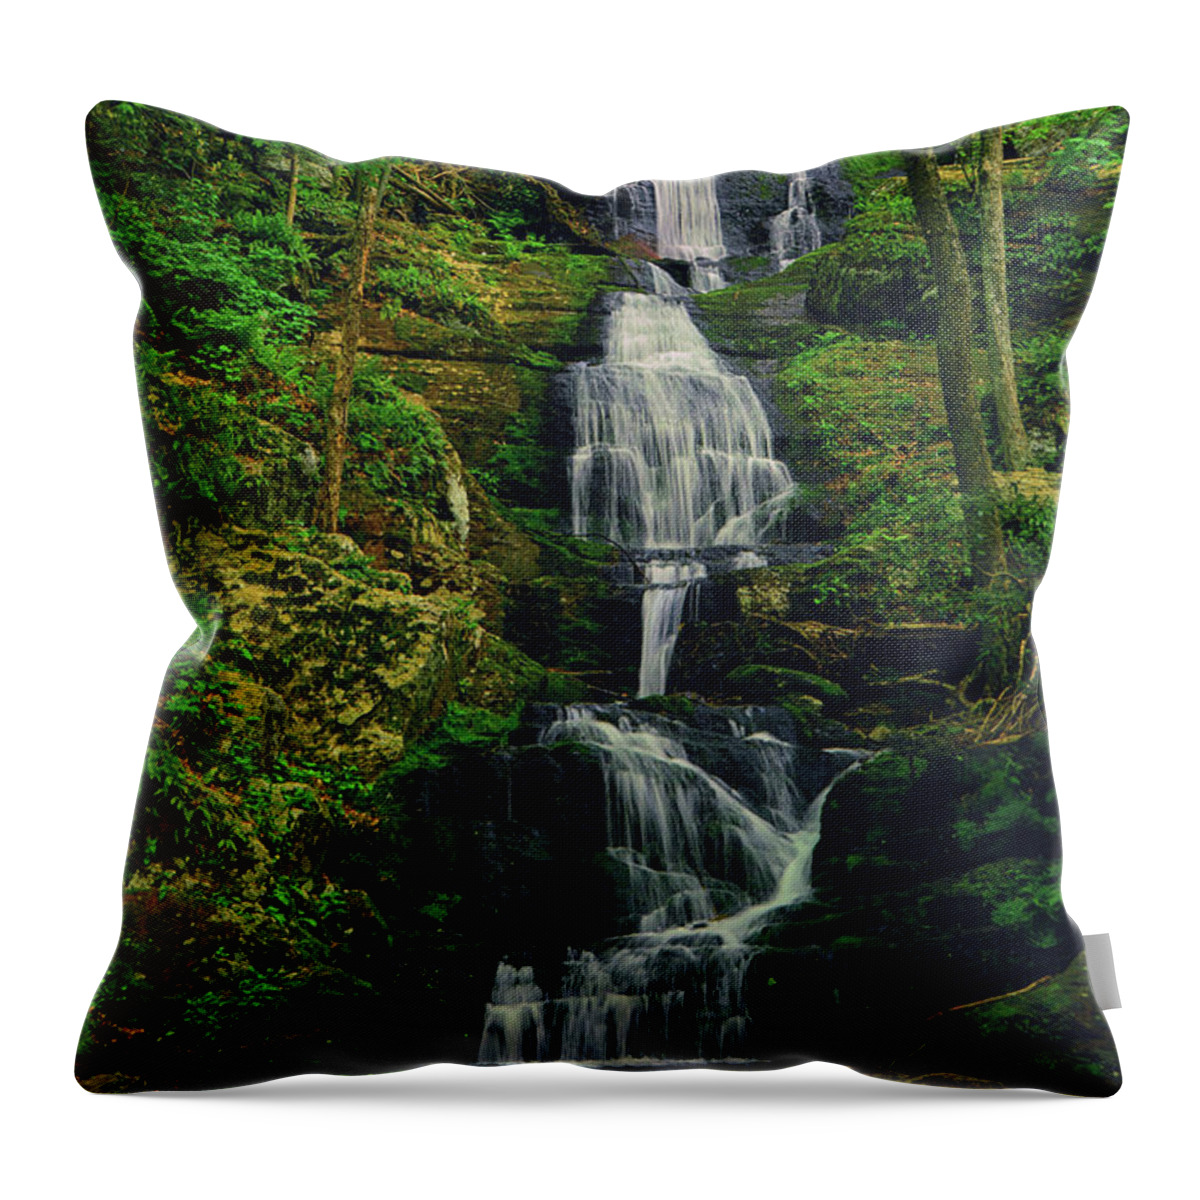 Buttermilk Falls Throw Pillow featuring the photograph Buttermilk Falls 3 by Raymond Salani III